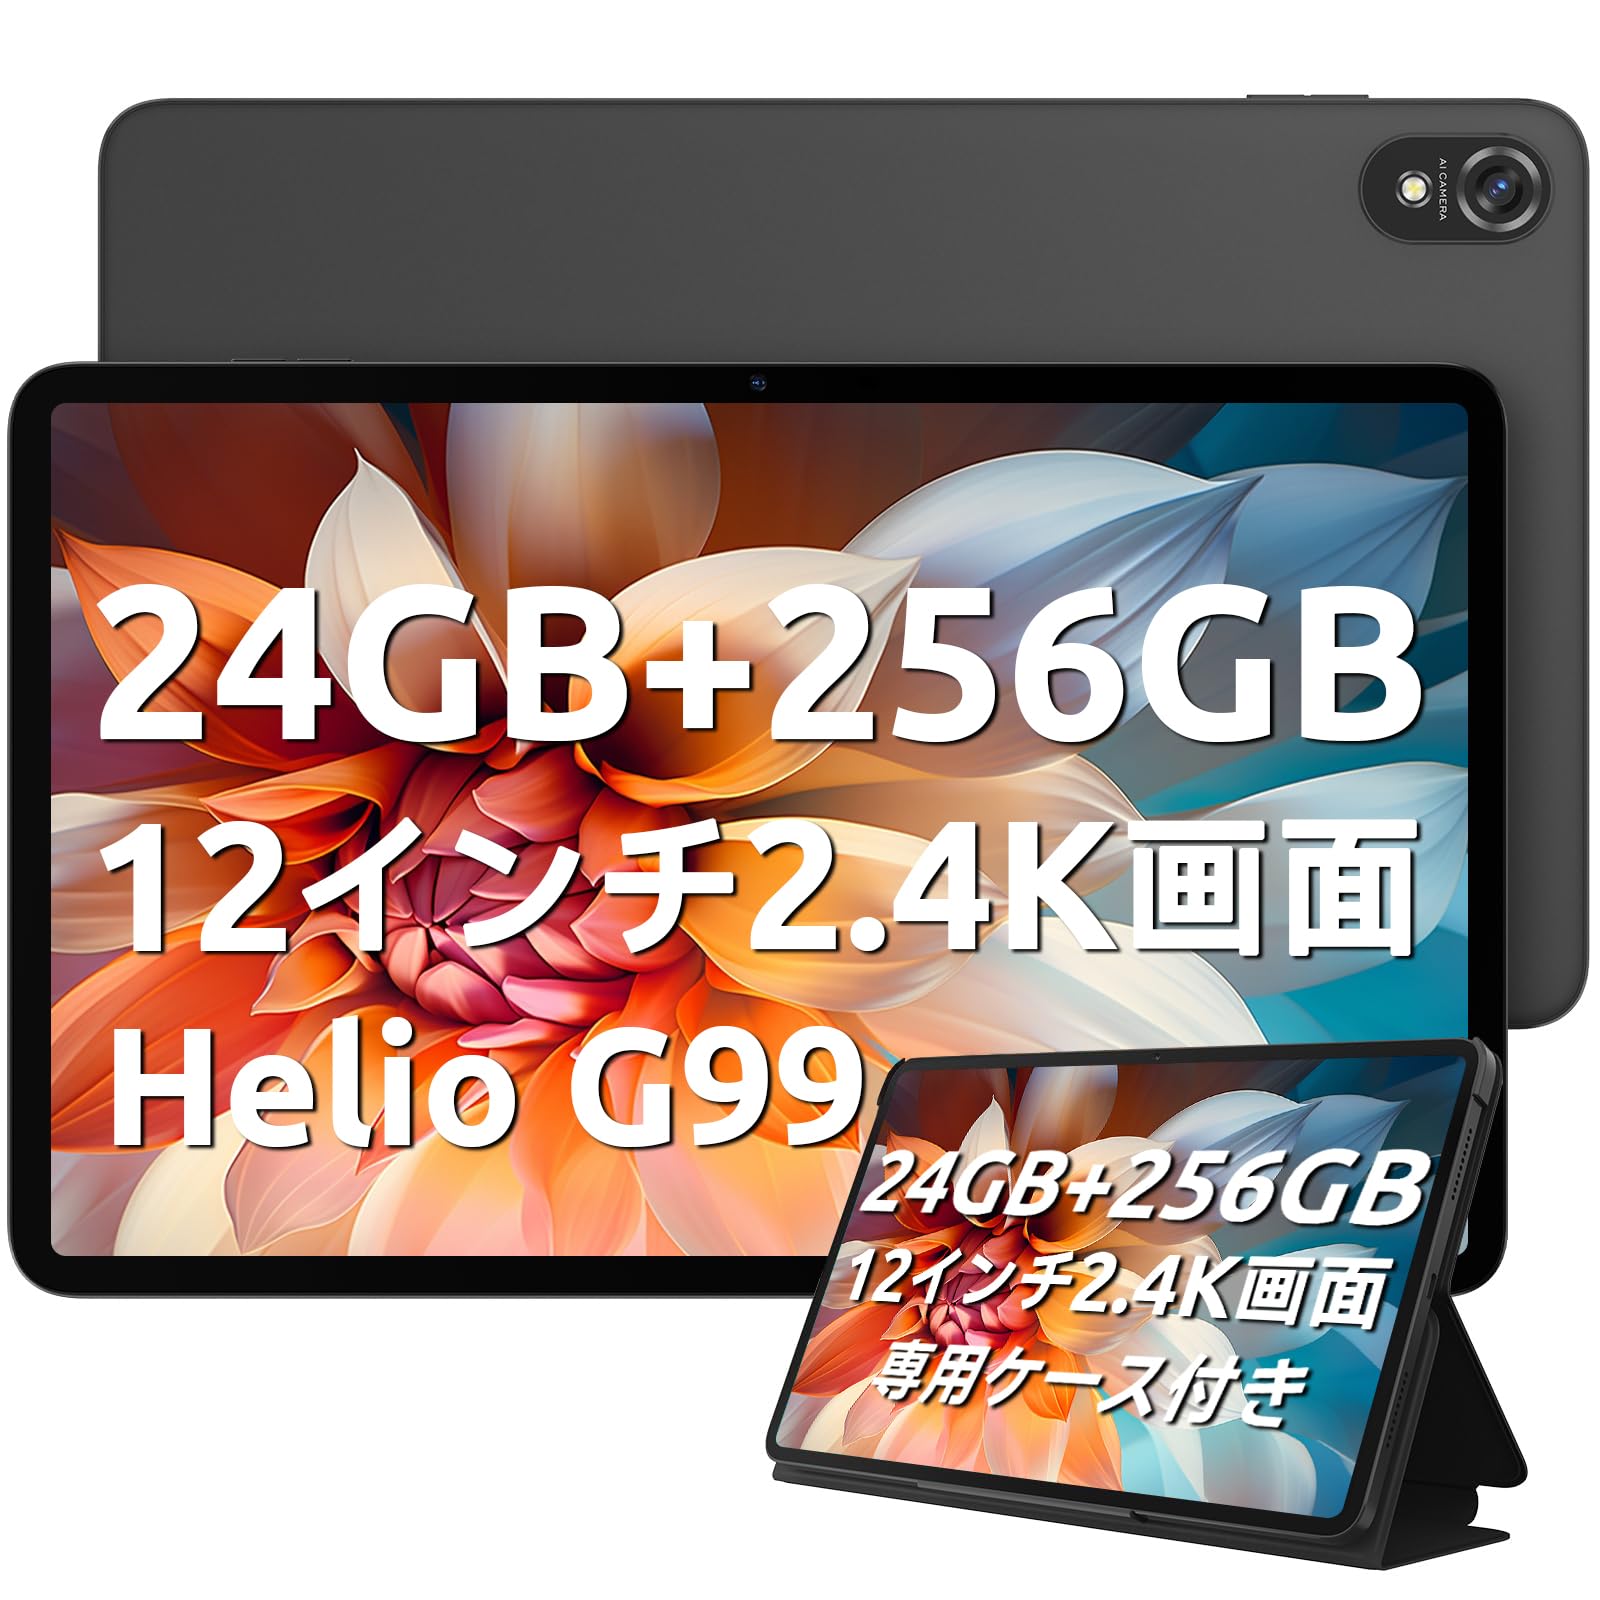 Android 13 タブレット Blackview Tab18 タブレット 12インチ、24GB+256GB+1TB TF拡張、Widevine L1対応、2.4K IPS画面、2.2GHz Helio G99 8コアCPU、33W PD急速充電+8800mAh、アンドロイド タブレット simフリー 4G LTE+16MP+Smart-PA Quad Harman スピーカー+無線投影